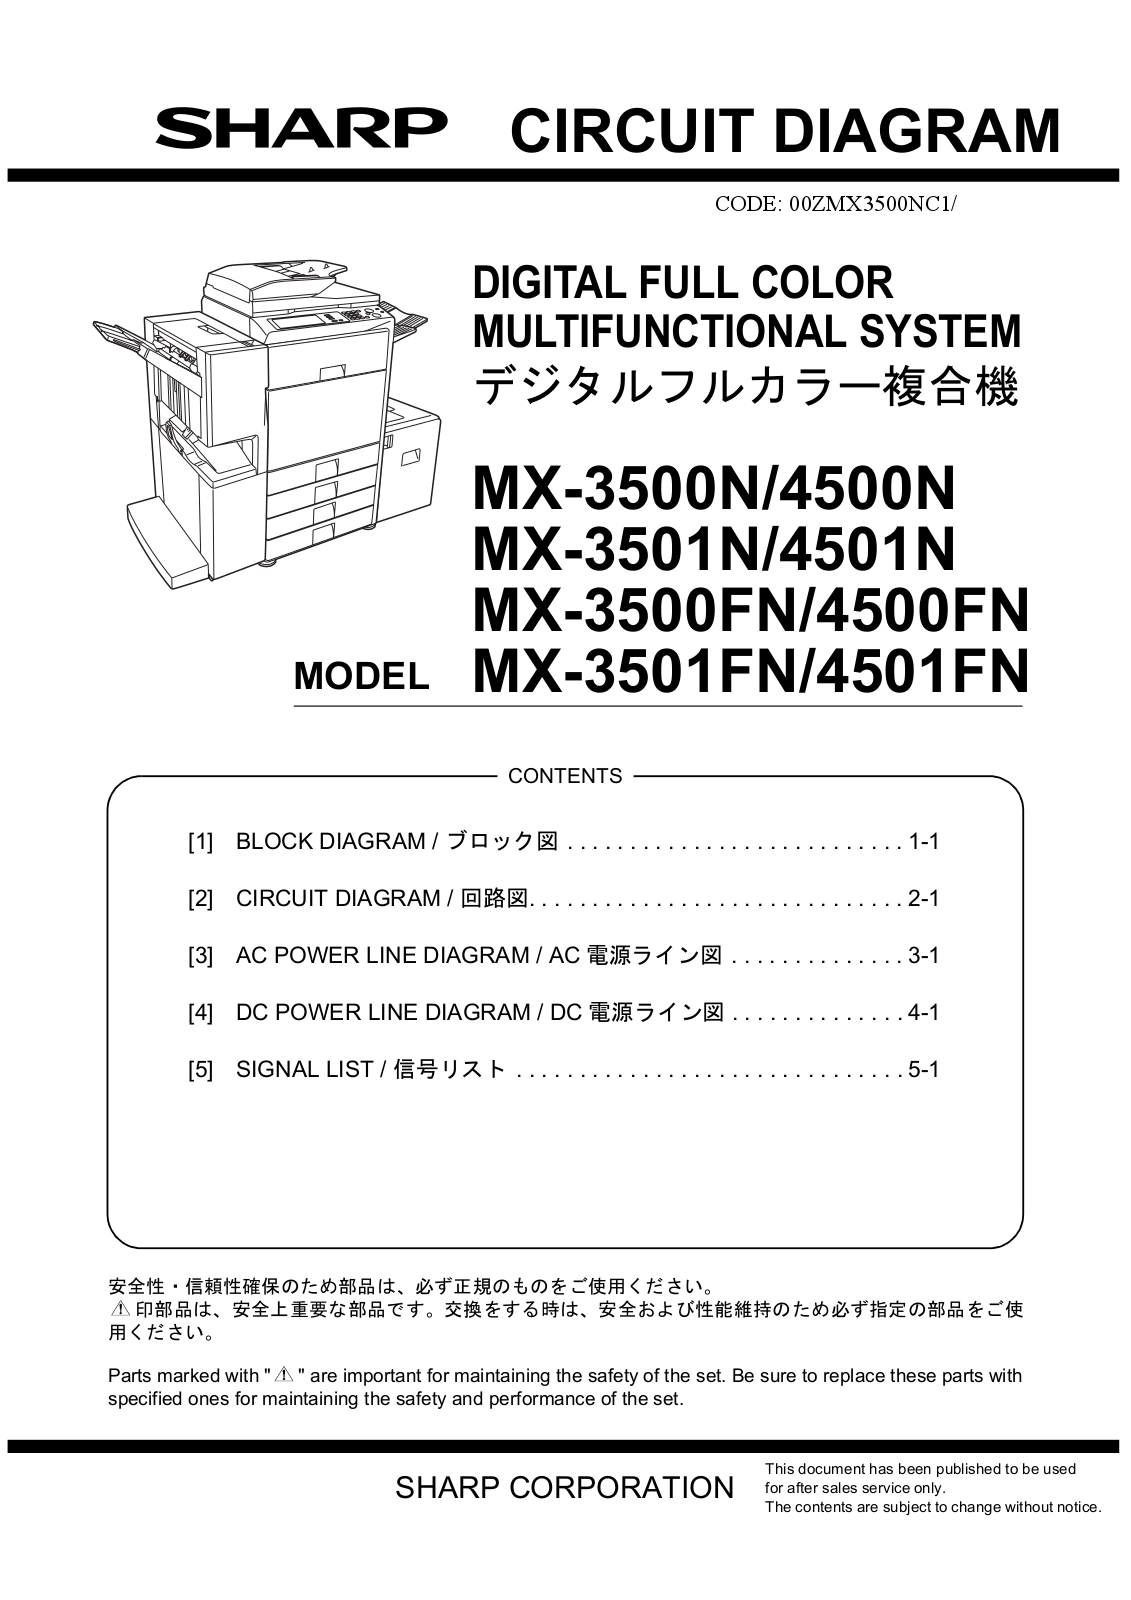 SHARP MX3500NC, MX-3500N, MX-4500N, MX-3501N, MX-4501N Service Manual